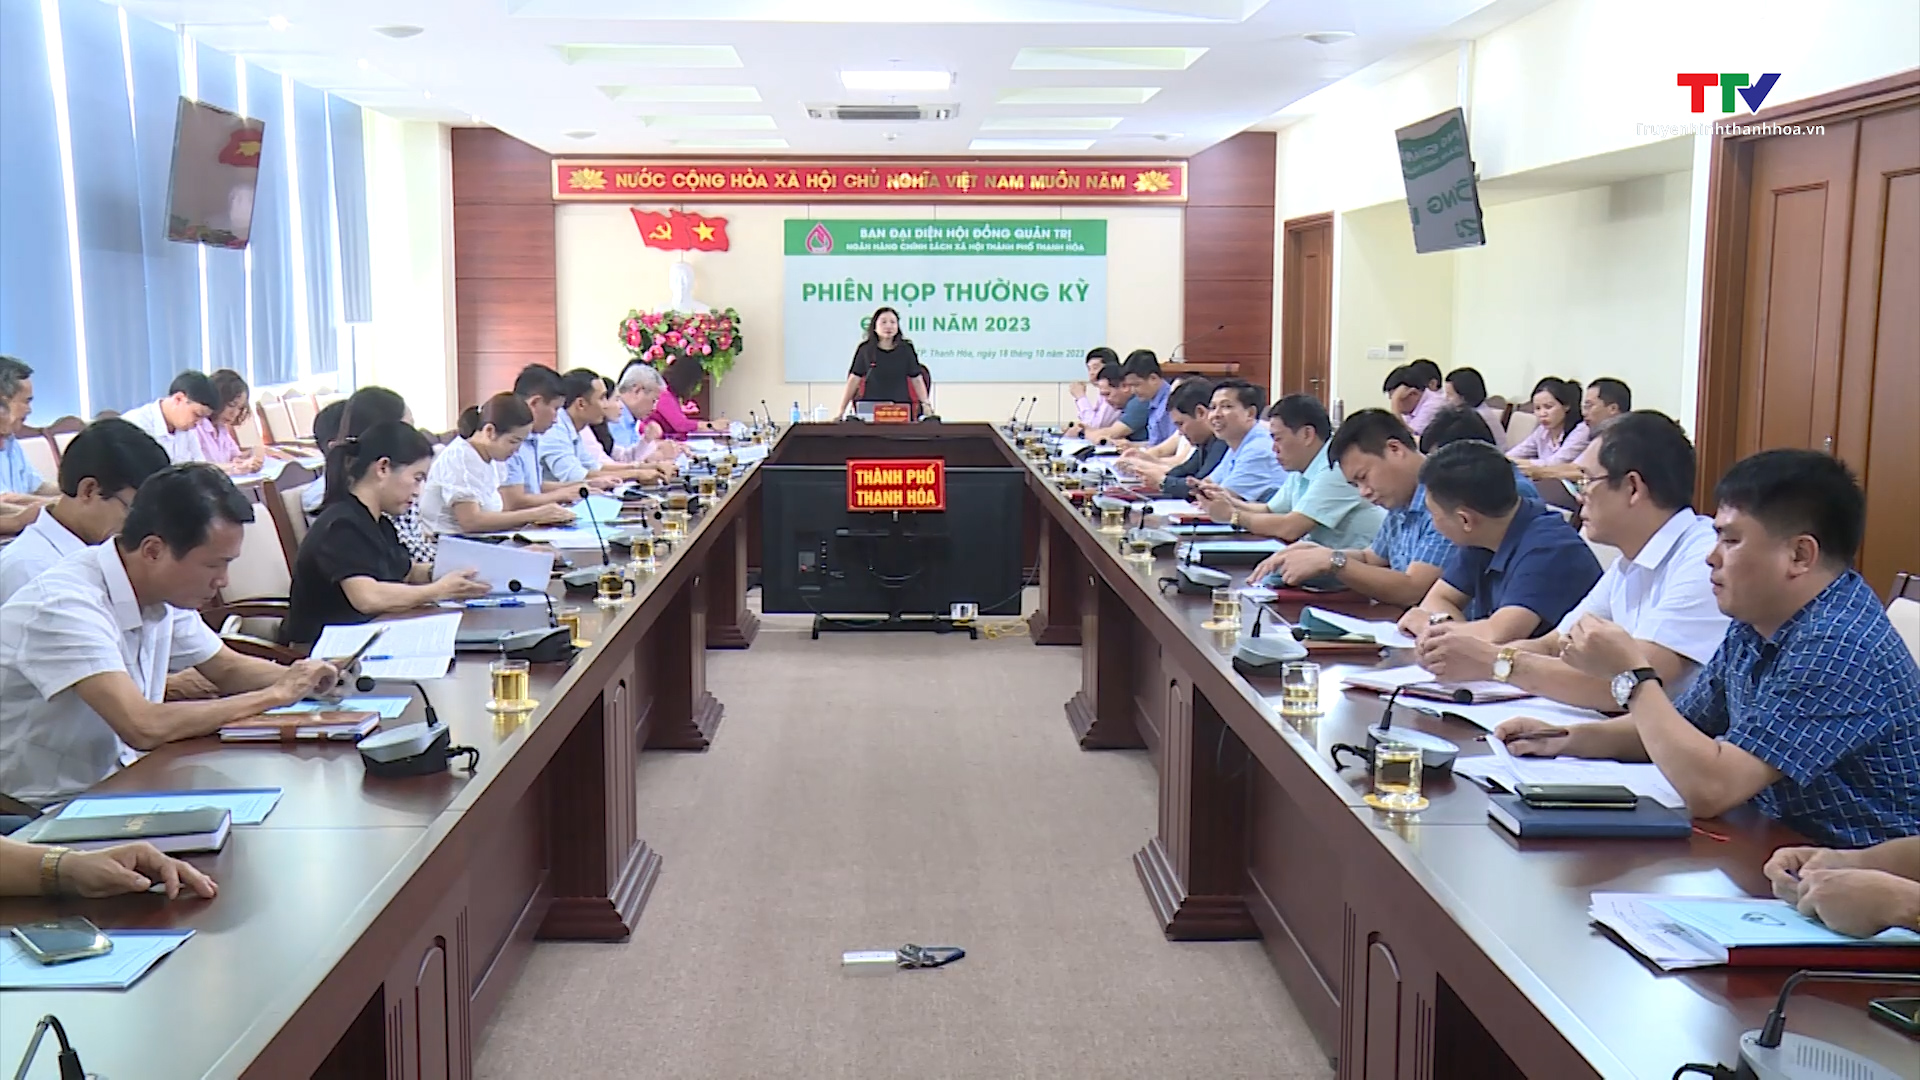 Tin tổng hợp hoạt động chính trị, kinh tế, văn hóa, xã hội trên địa bàn thành phố Thanh Hóa ngày 25/10/2023 - Ảnh 6.